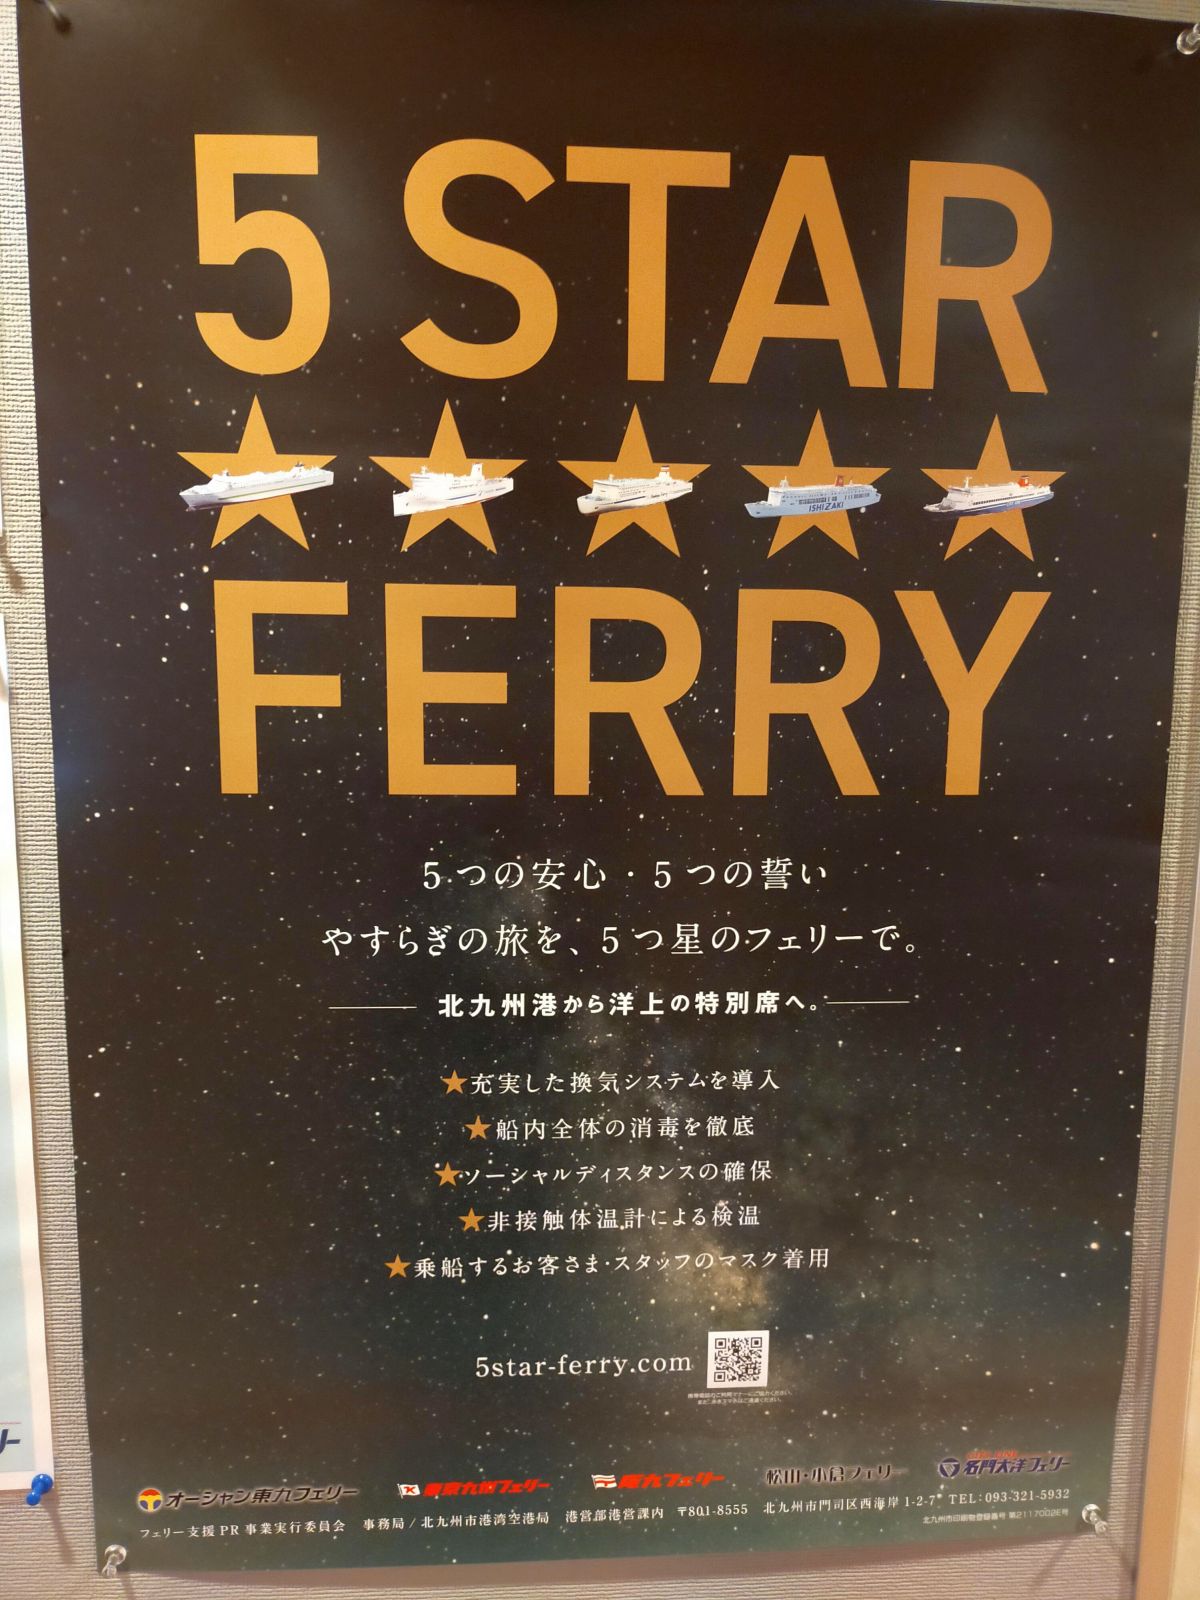 5 STAR FERRY